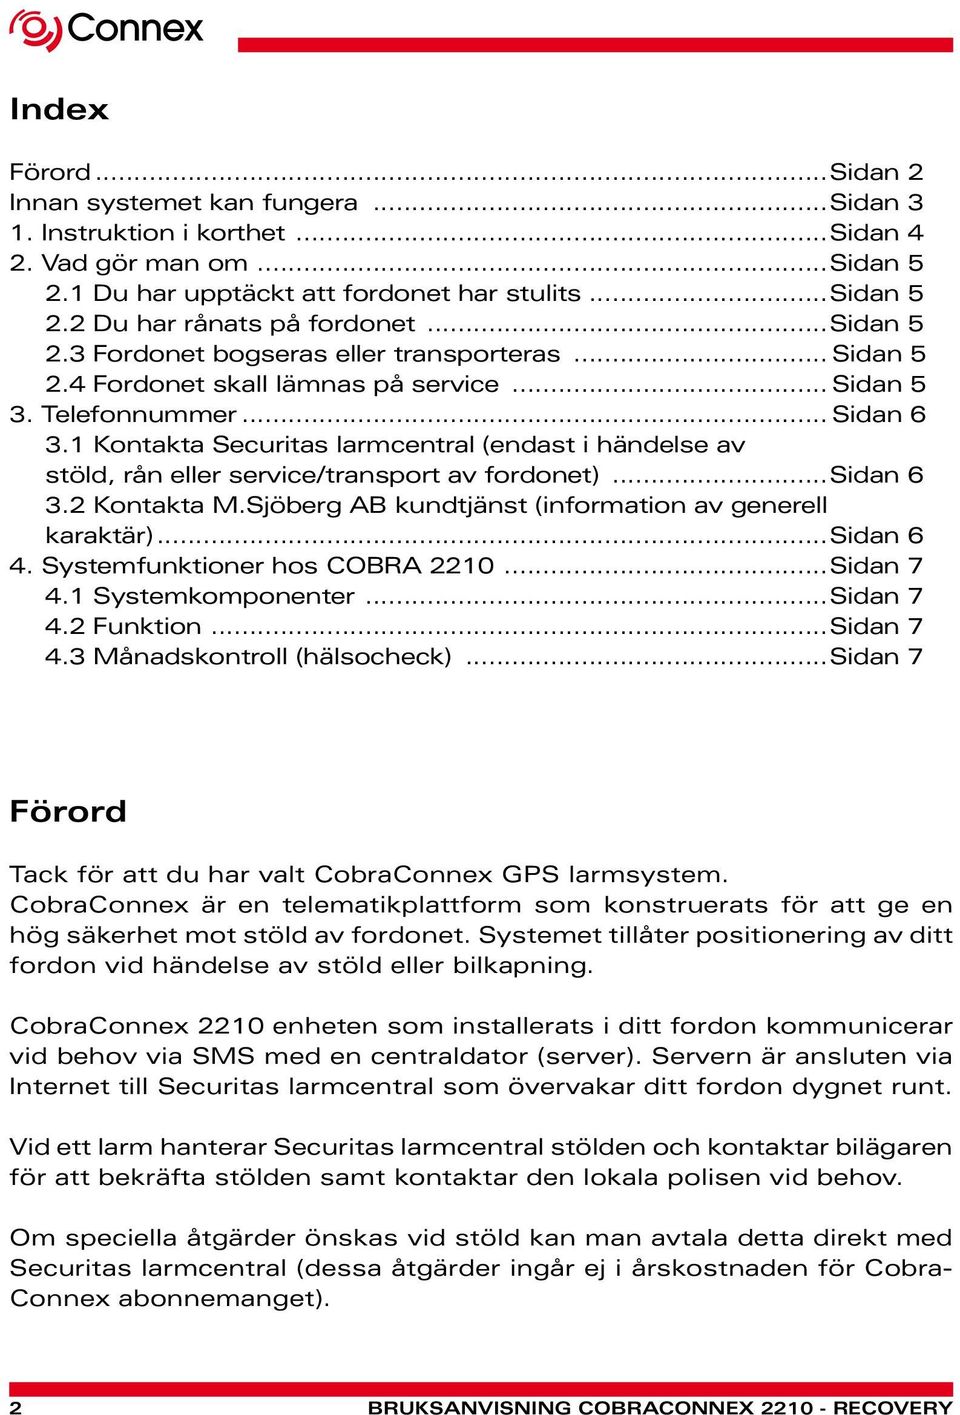 1 Kontakta Securitas larmcentral (endast i händelse av stöld, rån eller service/transport av fordonet)...sidan 6 3.2 Kontakta M.Sjöberg AB kundtjänst (information av generell karaktär)...sidan 6 4.